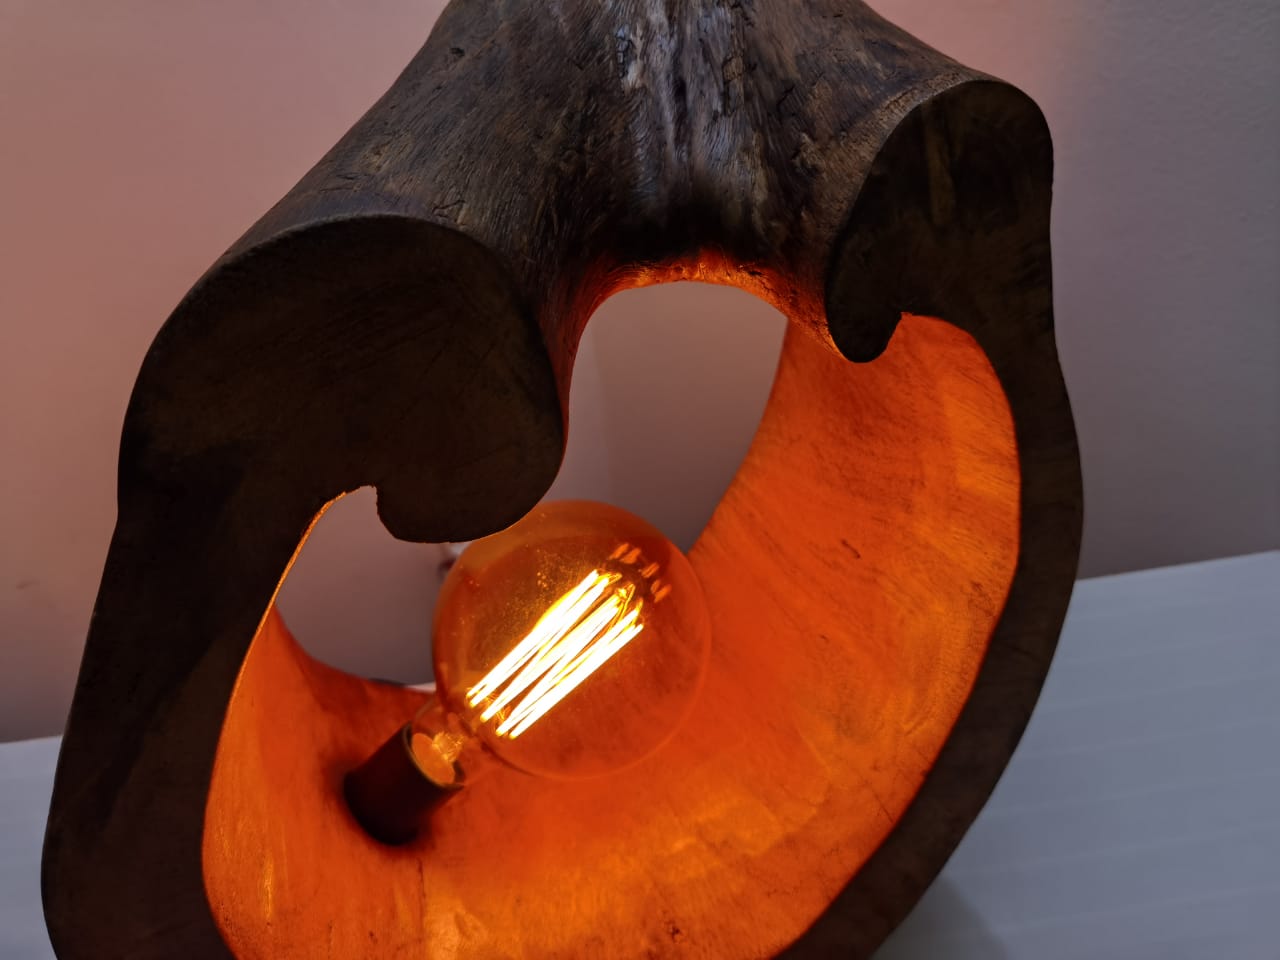 Lampe en bois design avec une ampoule orange